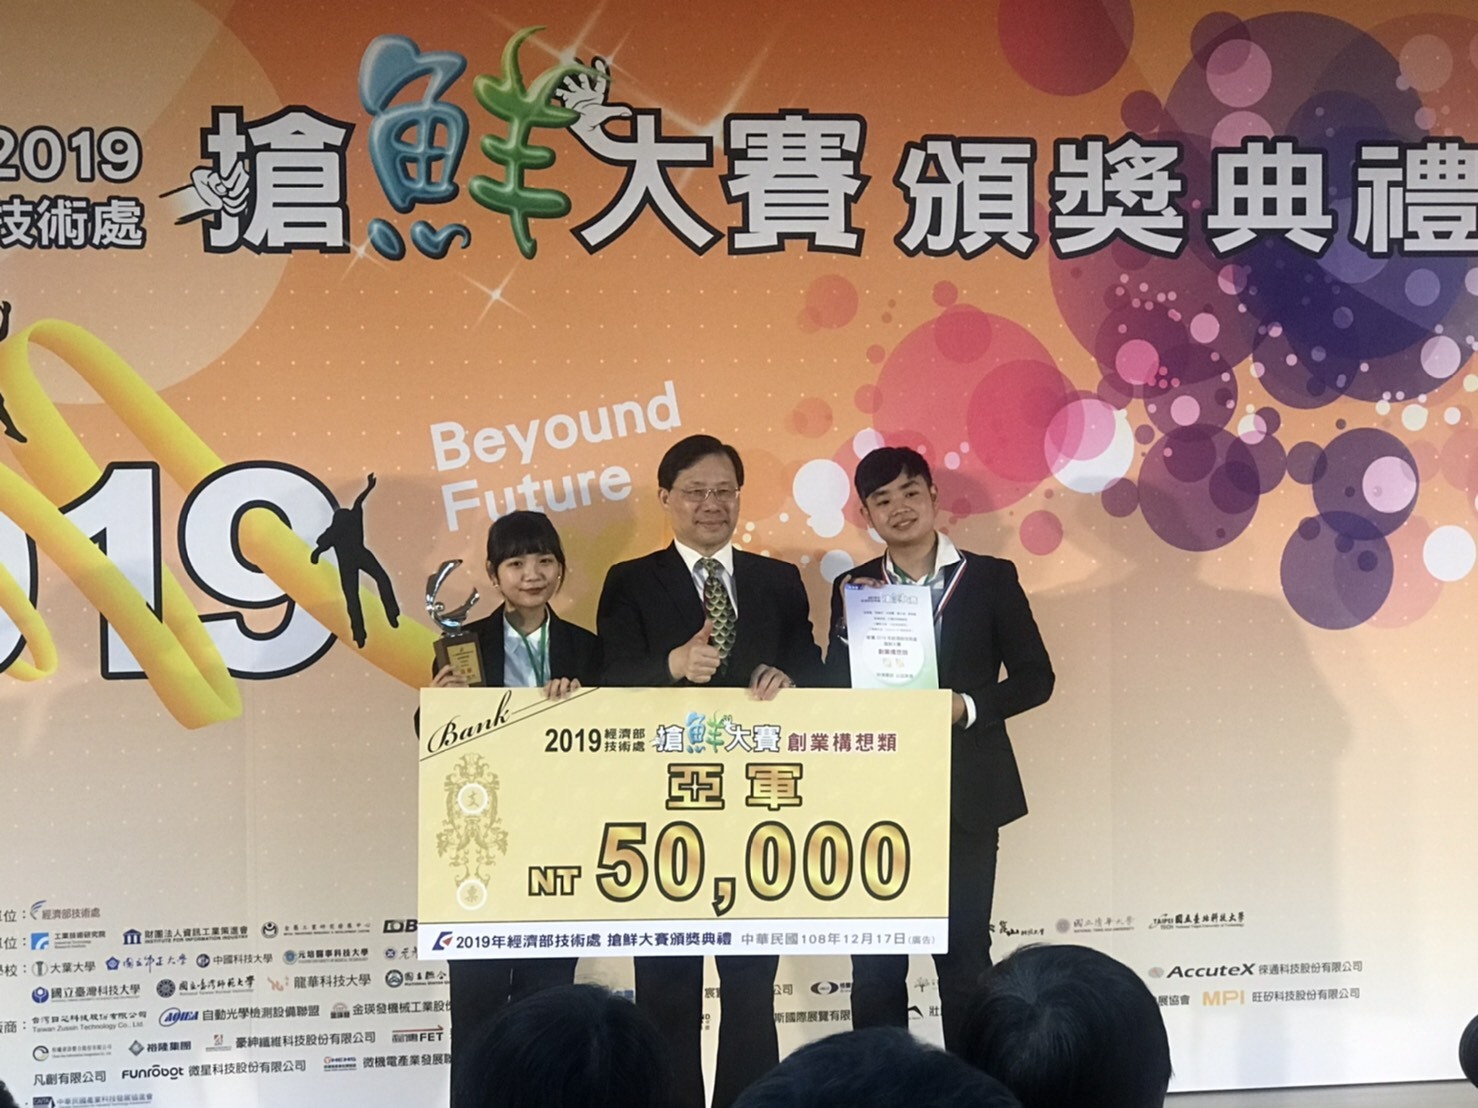 賀本系宋俊賢同學參加經濟部搶鮮大賽榮獲創業構想類亞軍。